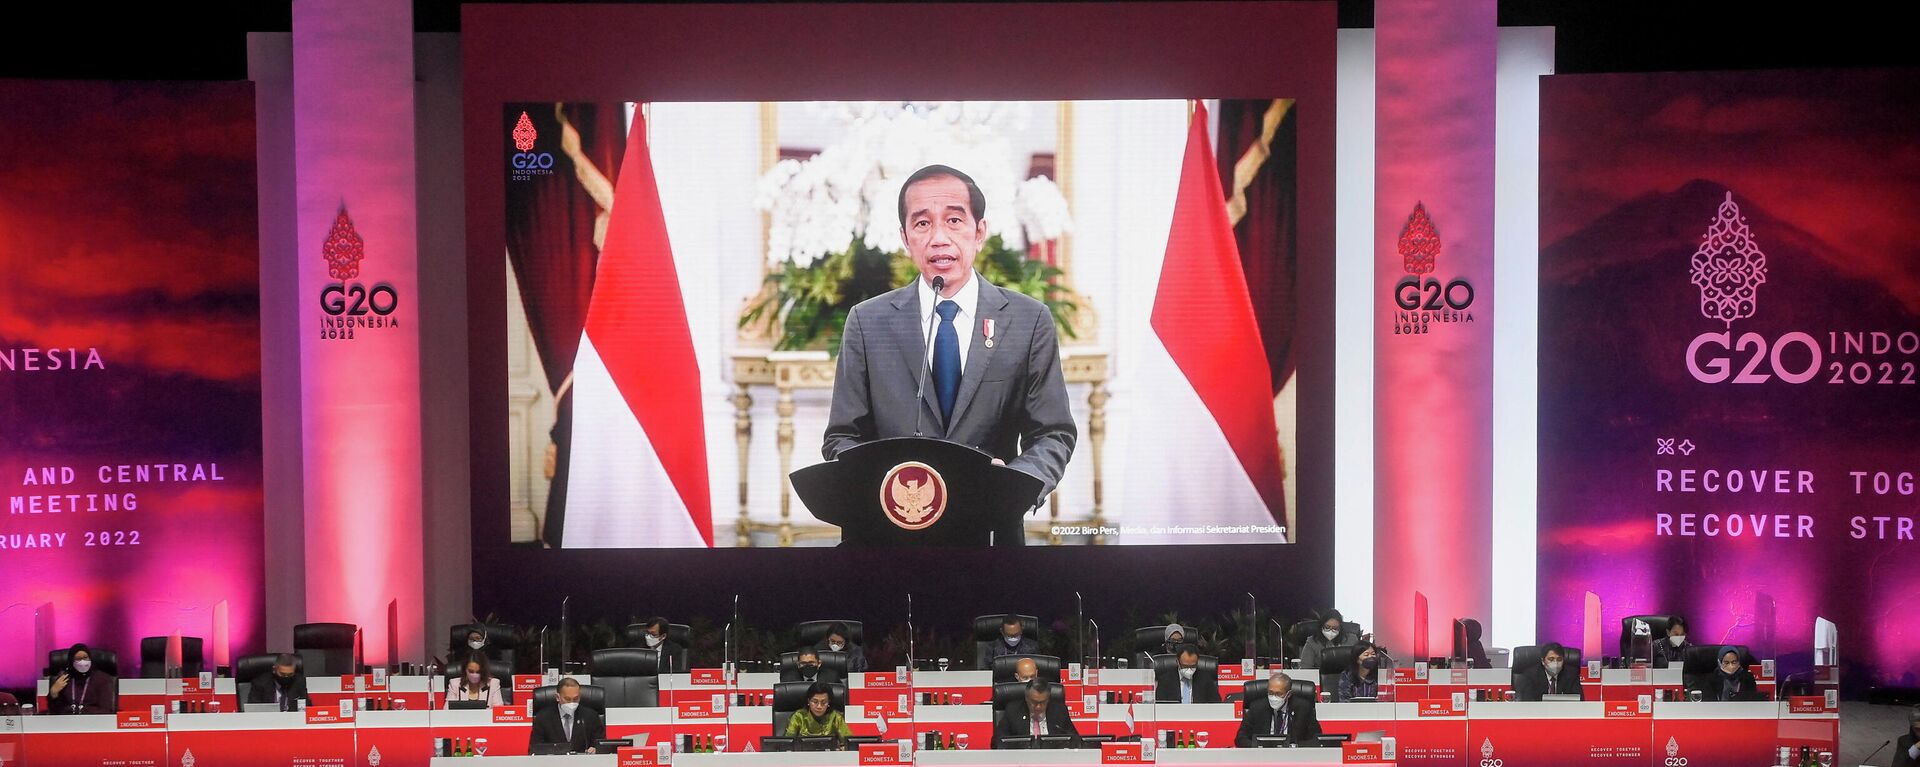 El presidente de Indonesia, Joko Widodo, aparece en una pantalla pronunciando su discurso durante la reunión de ministros de Finanzas y gobernadores de bancos centrales del G20 en el Centro de Convenciones de Yakarta, Yakarta, Indonesia, el 17 de febrero de 2022 - Sputnik Mundo, 1920, 17.02.2022